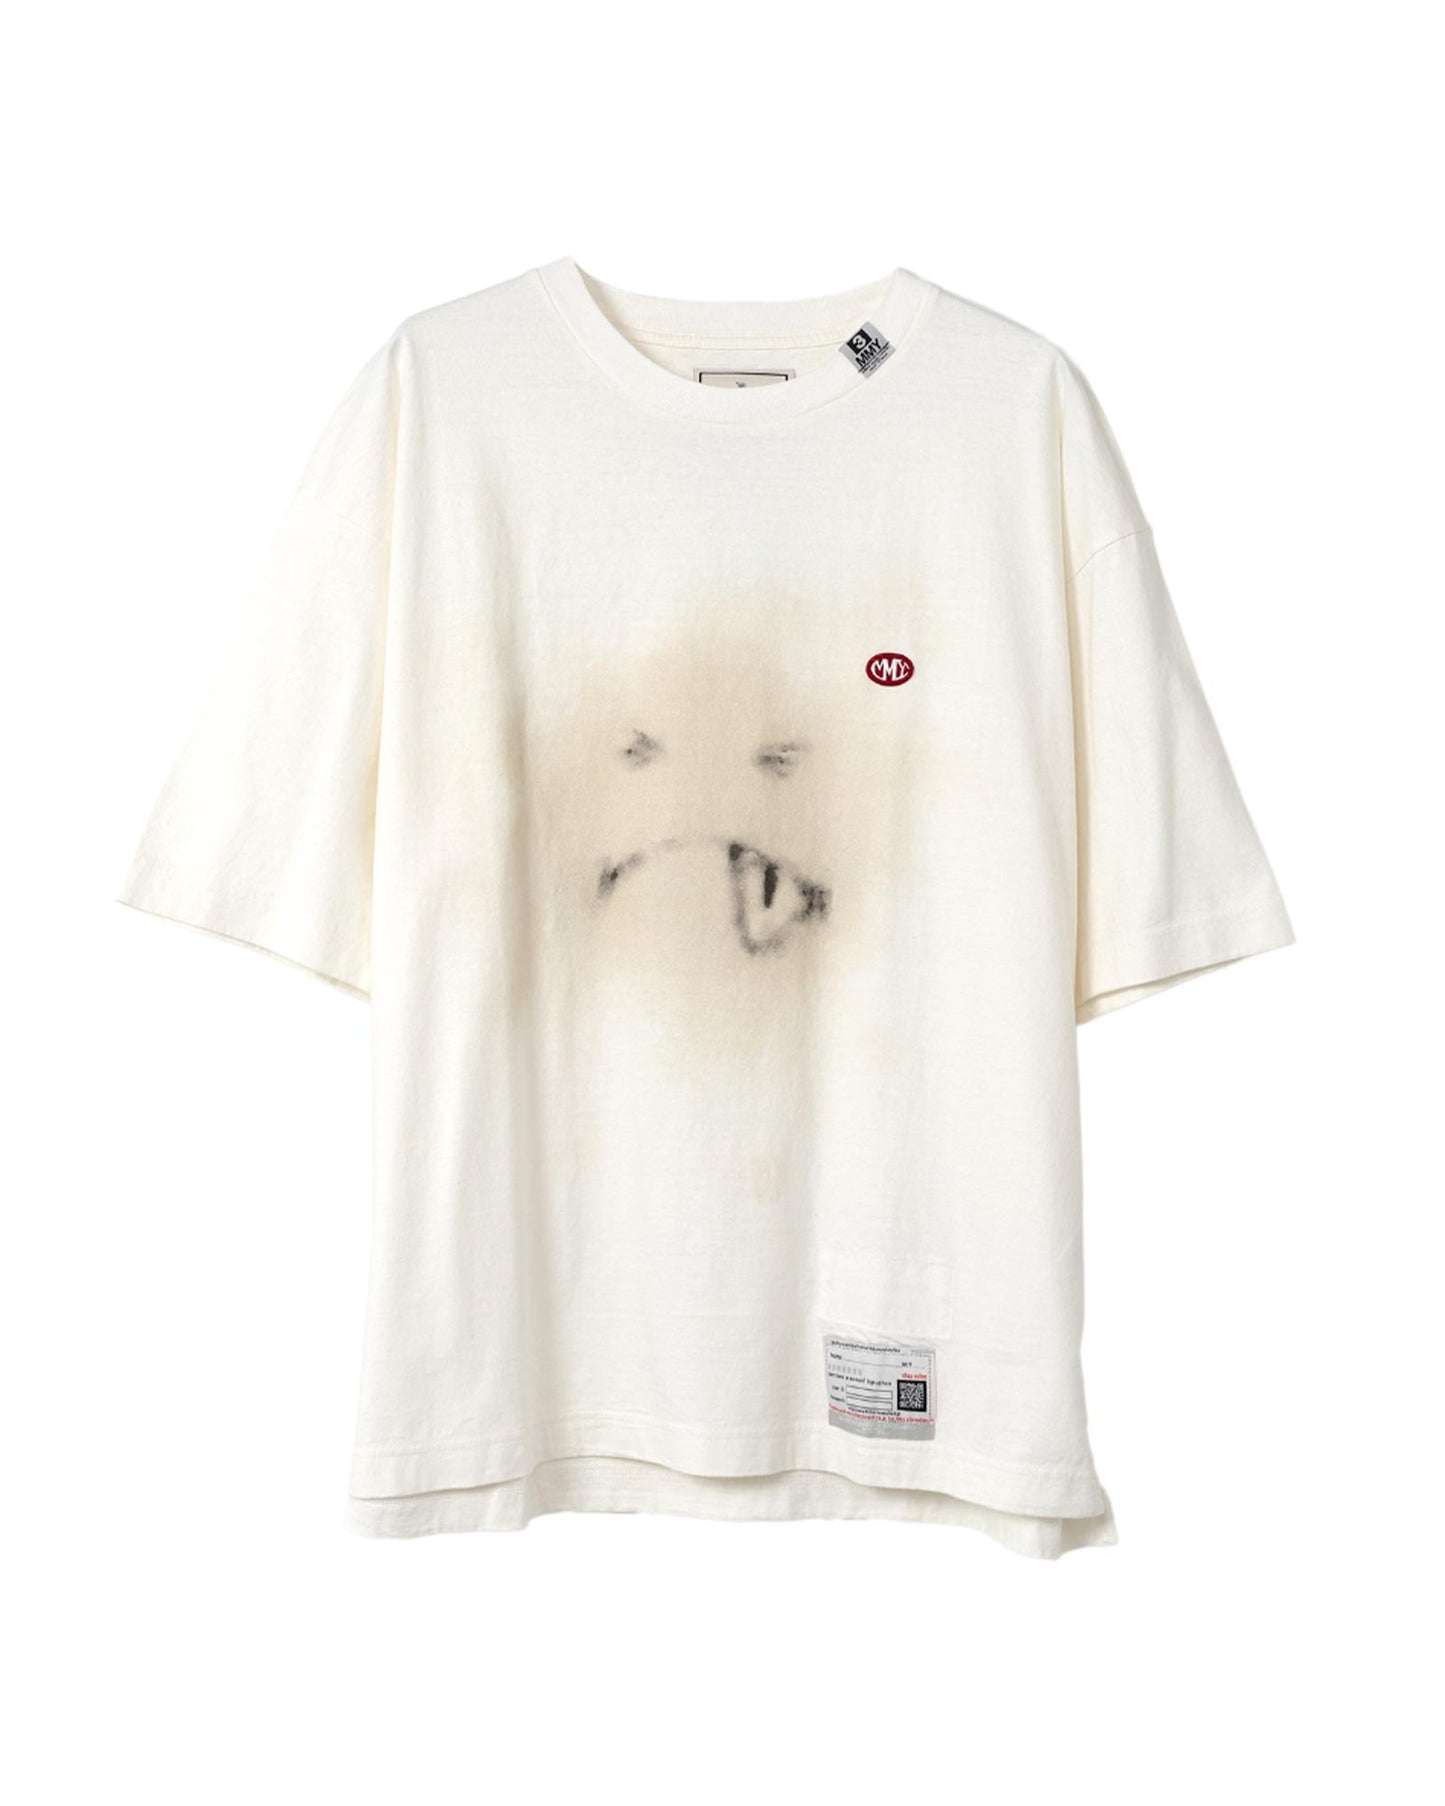 ミハラヤスヒロ/smily face printedT2/A12TS661Tシャツ/WHITE